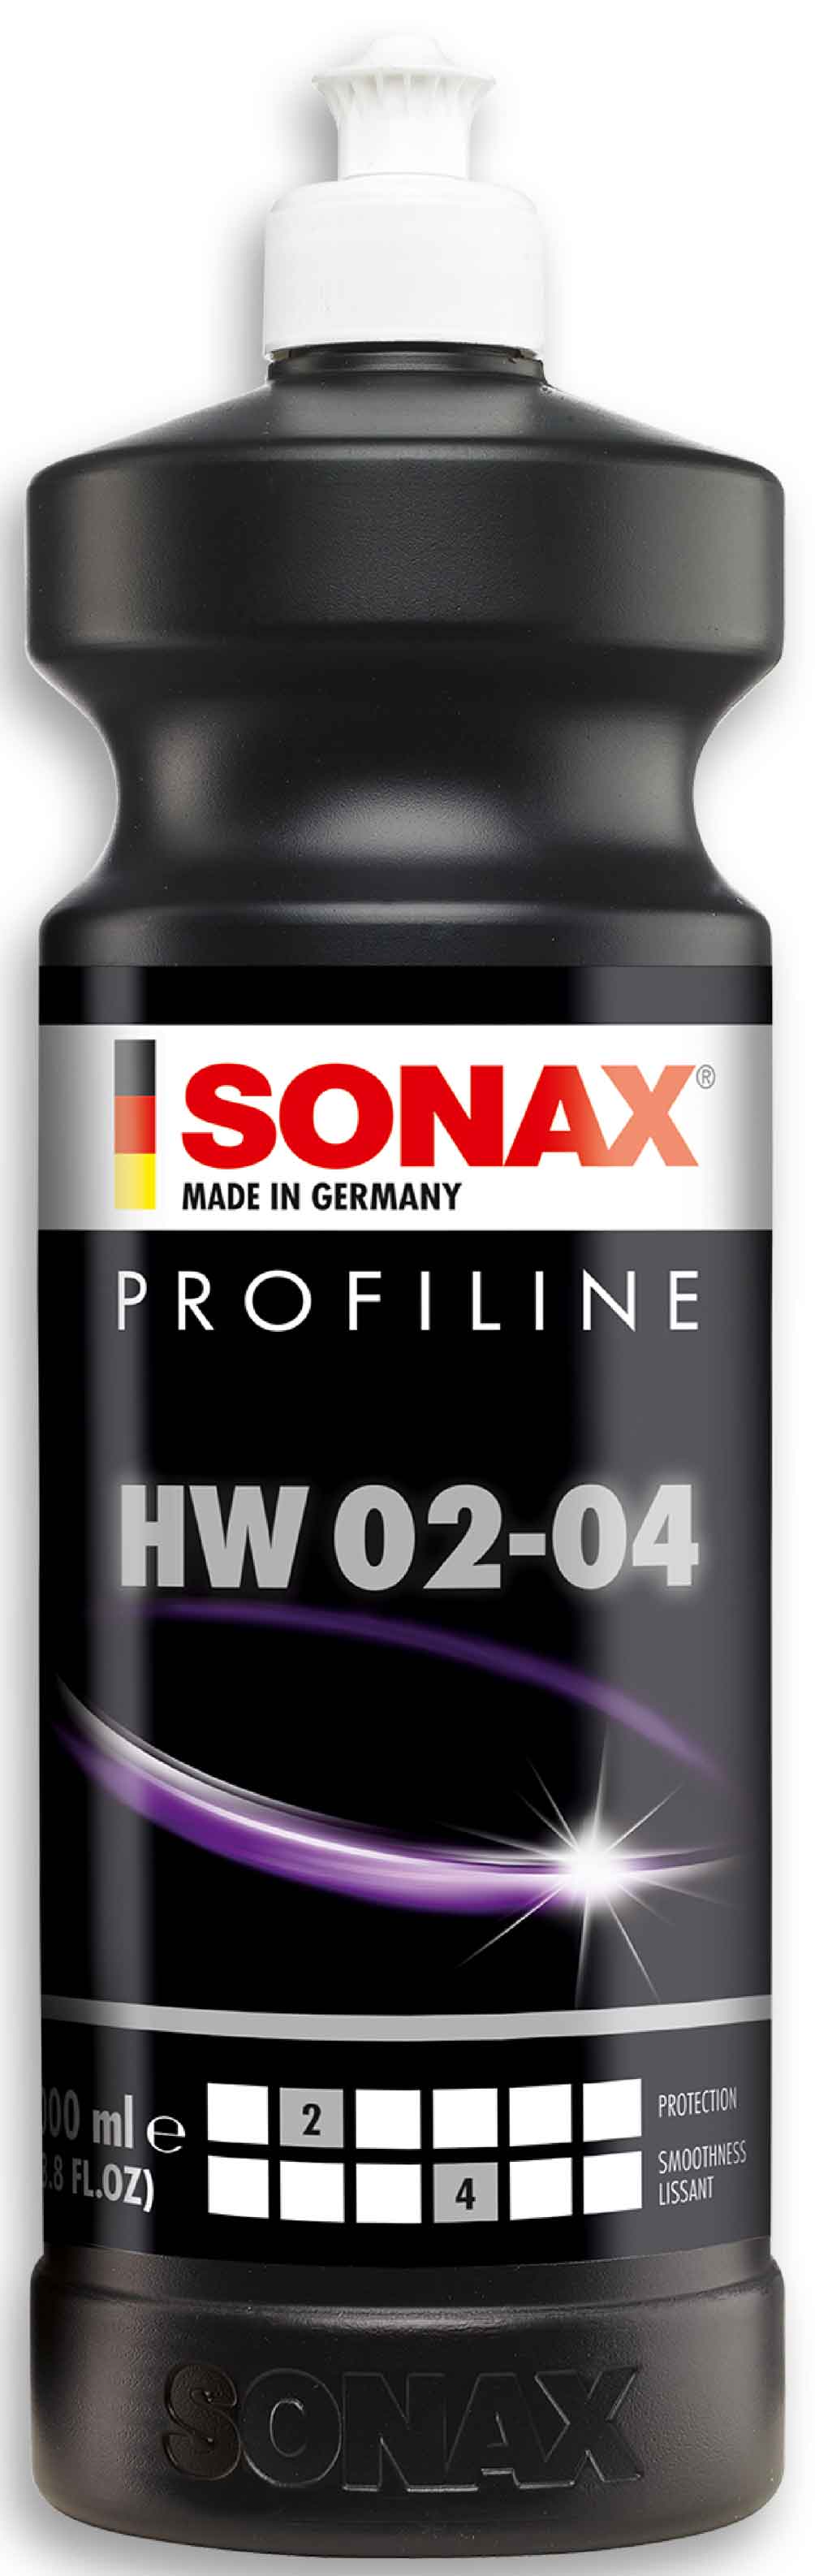 SONAX PROFILINE HW 02-04 1L